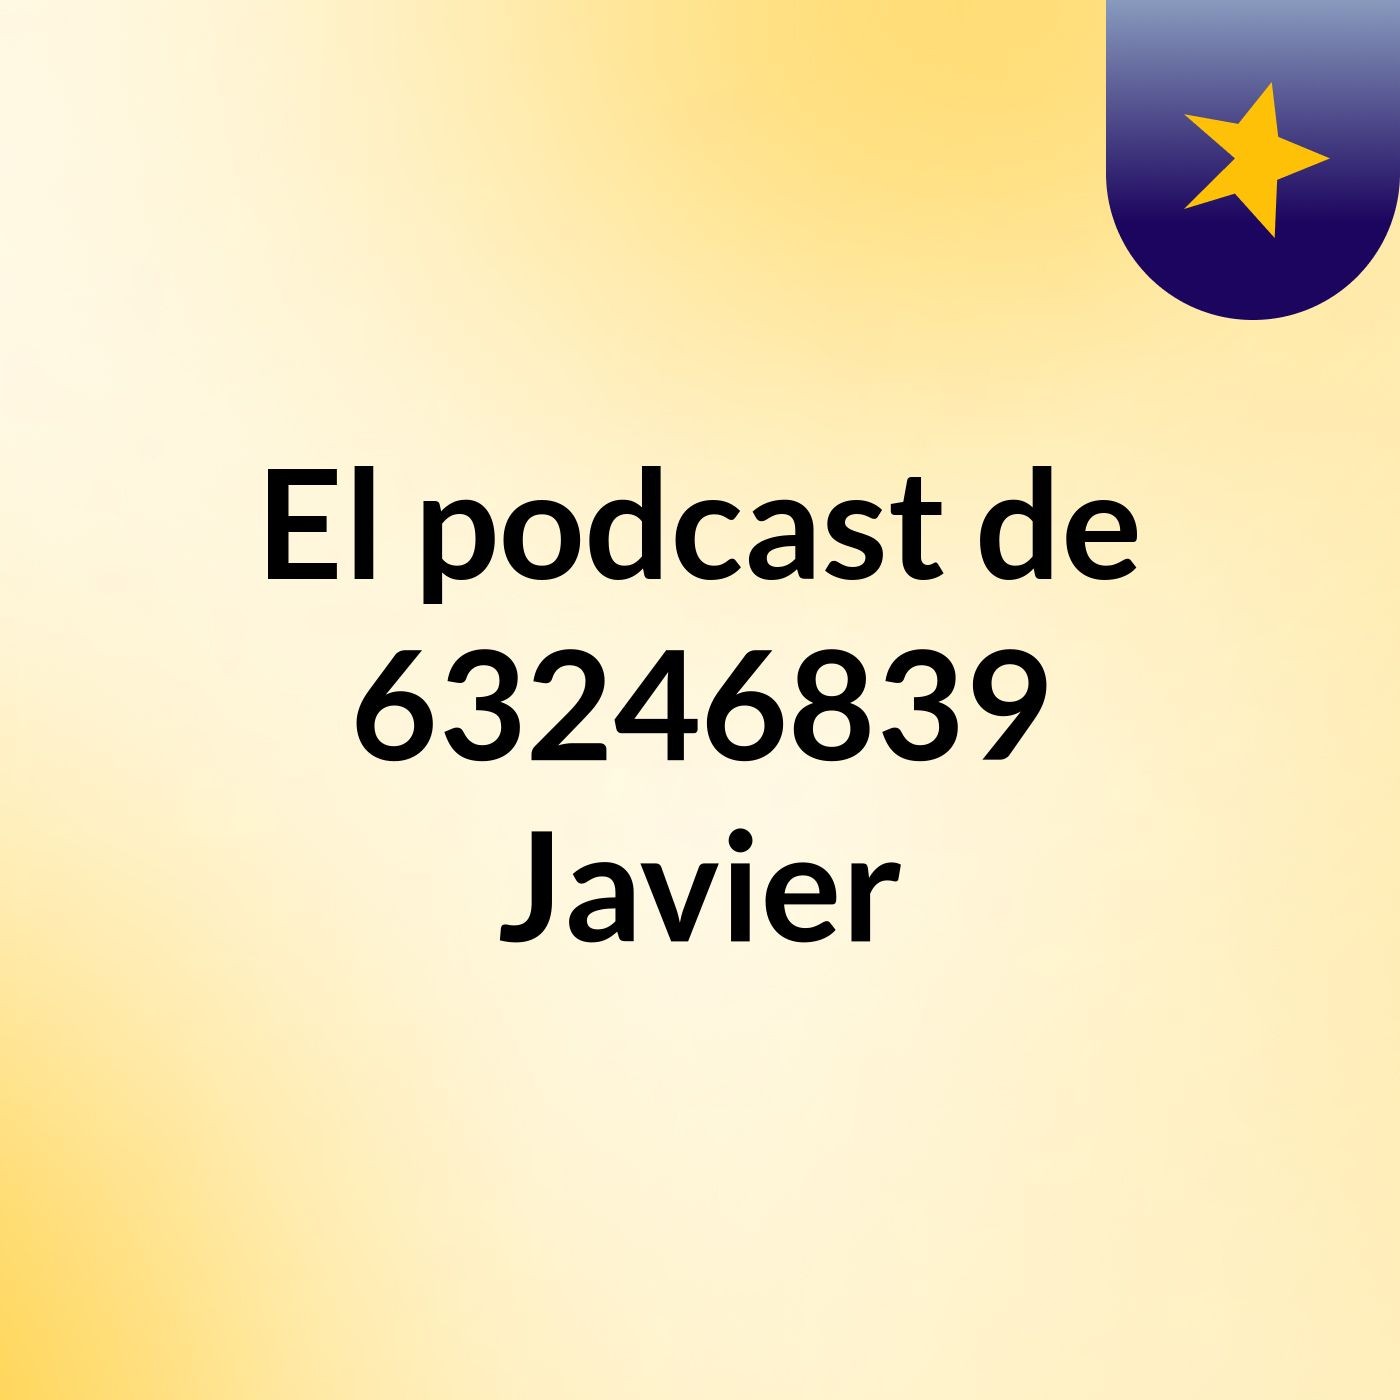 El podcast de 63246839 Javier